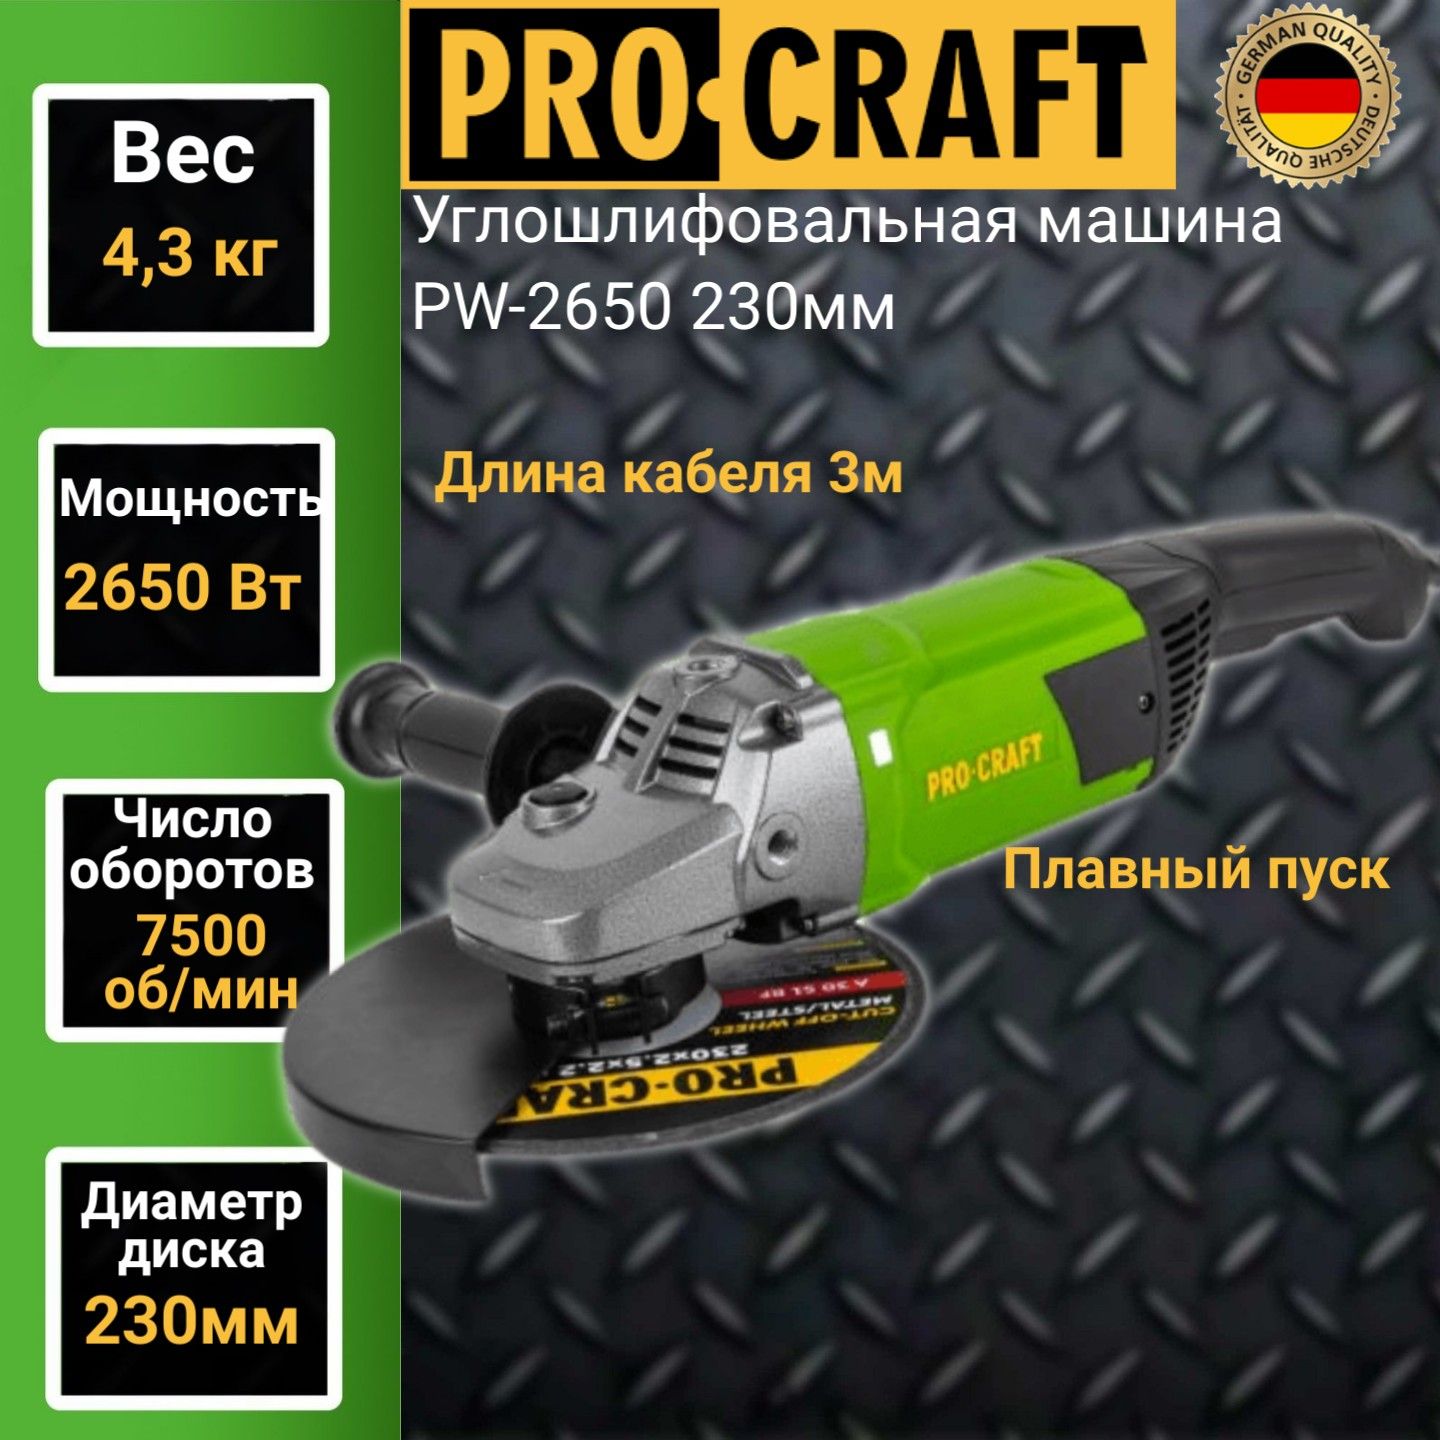 Углошлифовальная машина болгарка Procraft PW 2650, 230мм круг, 2650Вт, 7500об/мин углошлифовальная машина болгарка procraft pw1200 125мм круг 860вт 11000об мин